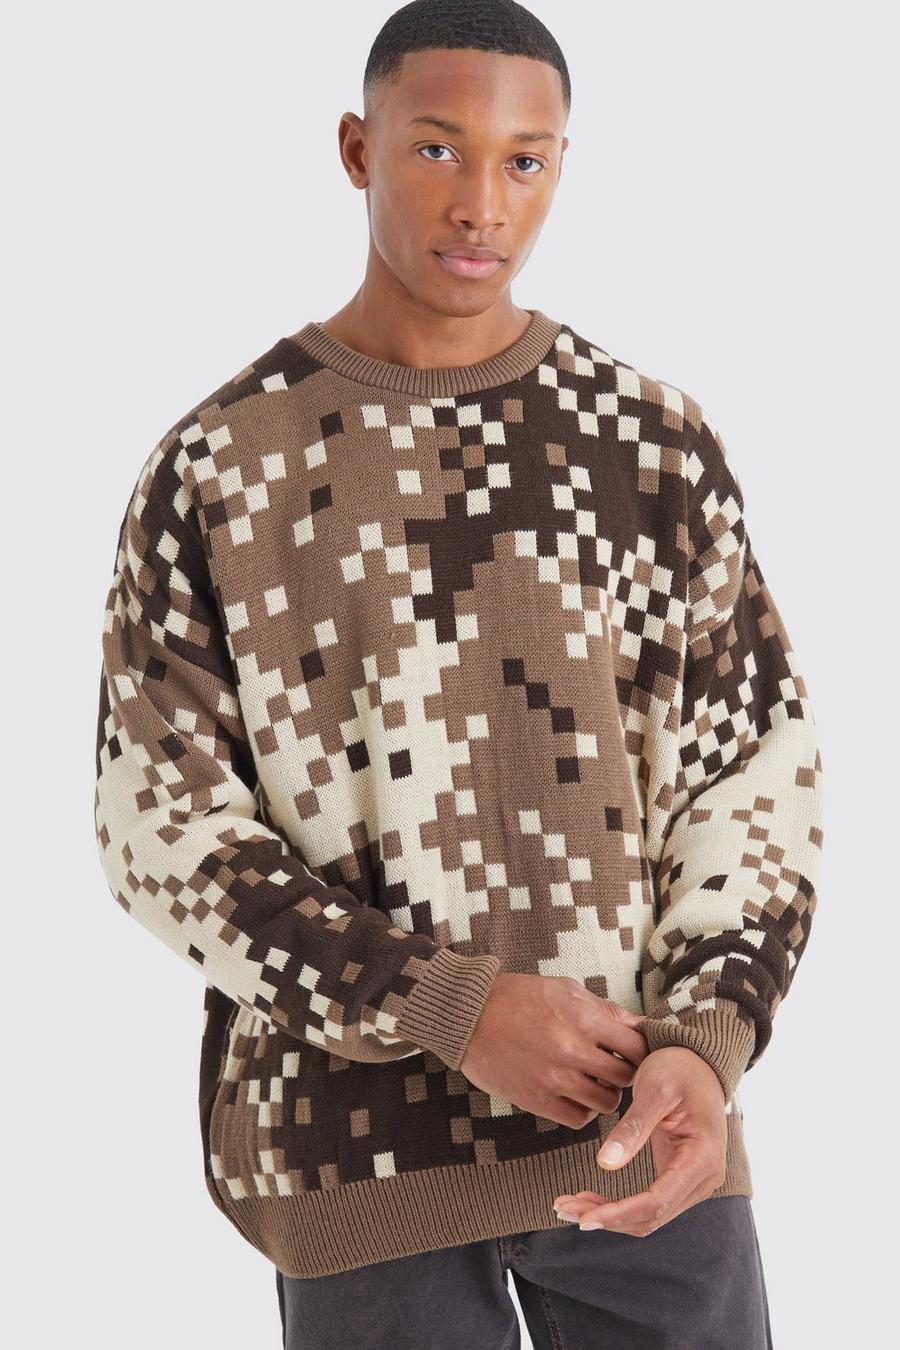 Maglione oversize in maglia in fantasia militare pixelata, Chocolate image number 1